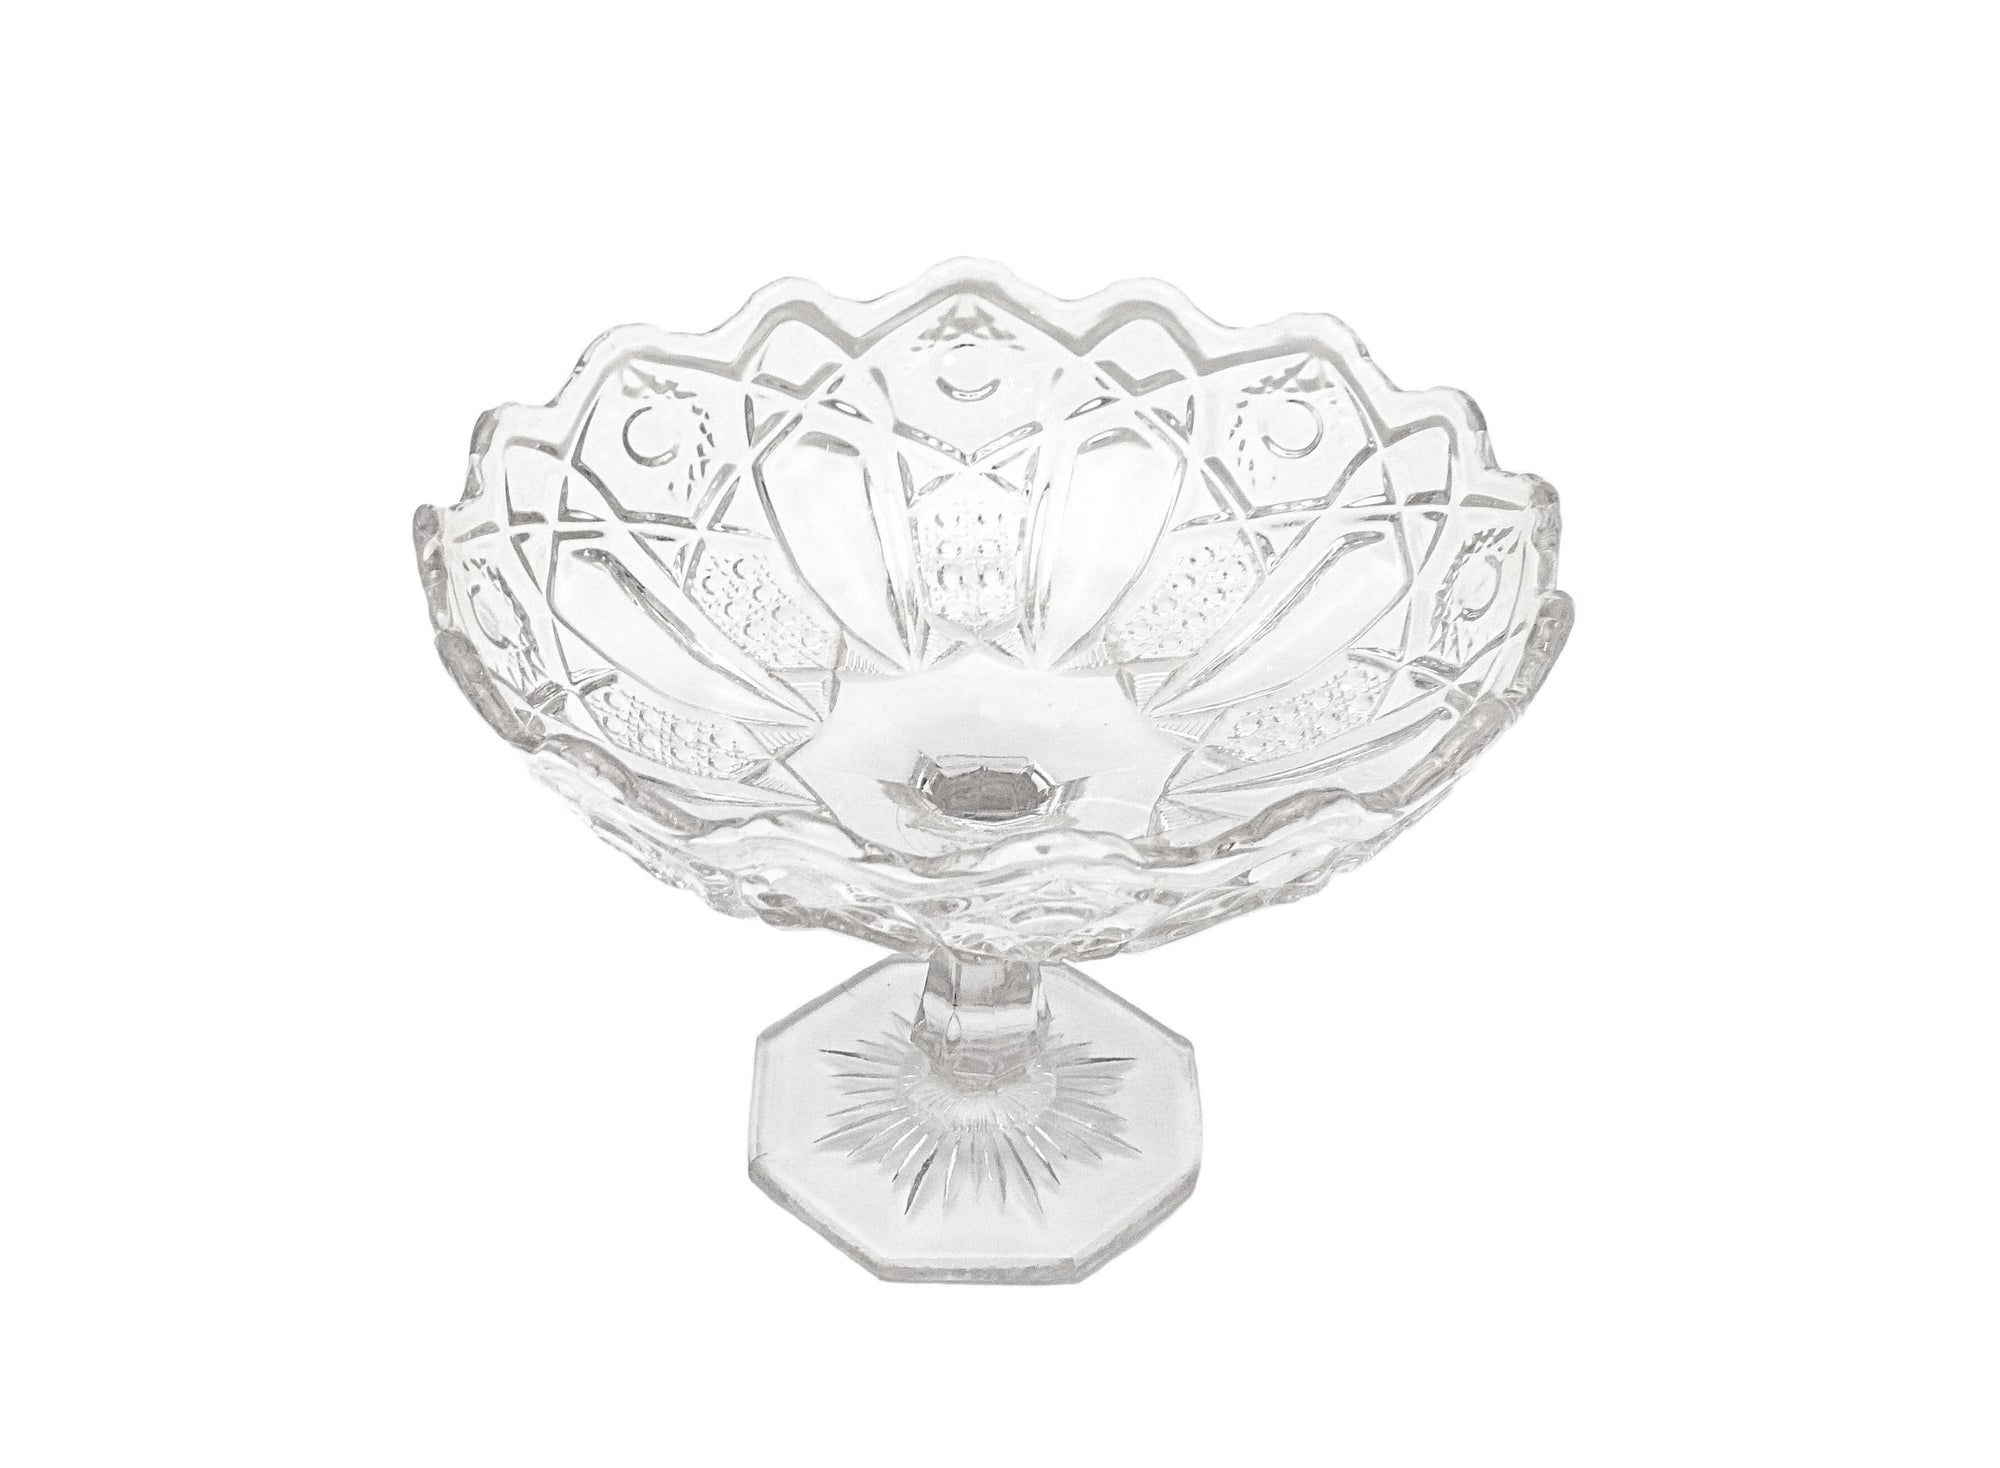 Edwardian Glass Pedestal Bowl, Vintage Candy Bowl